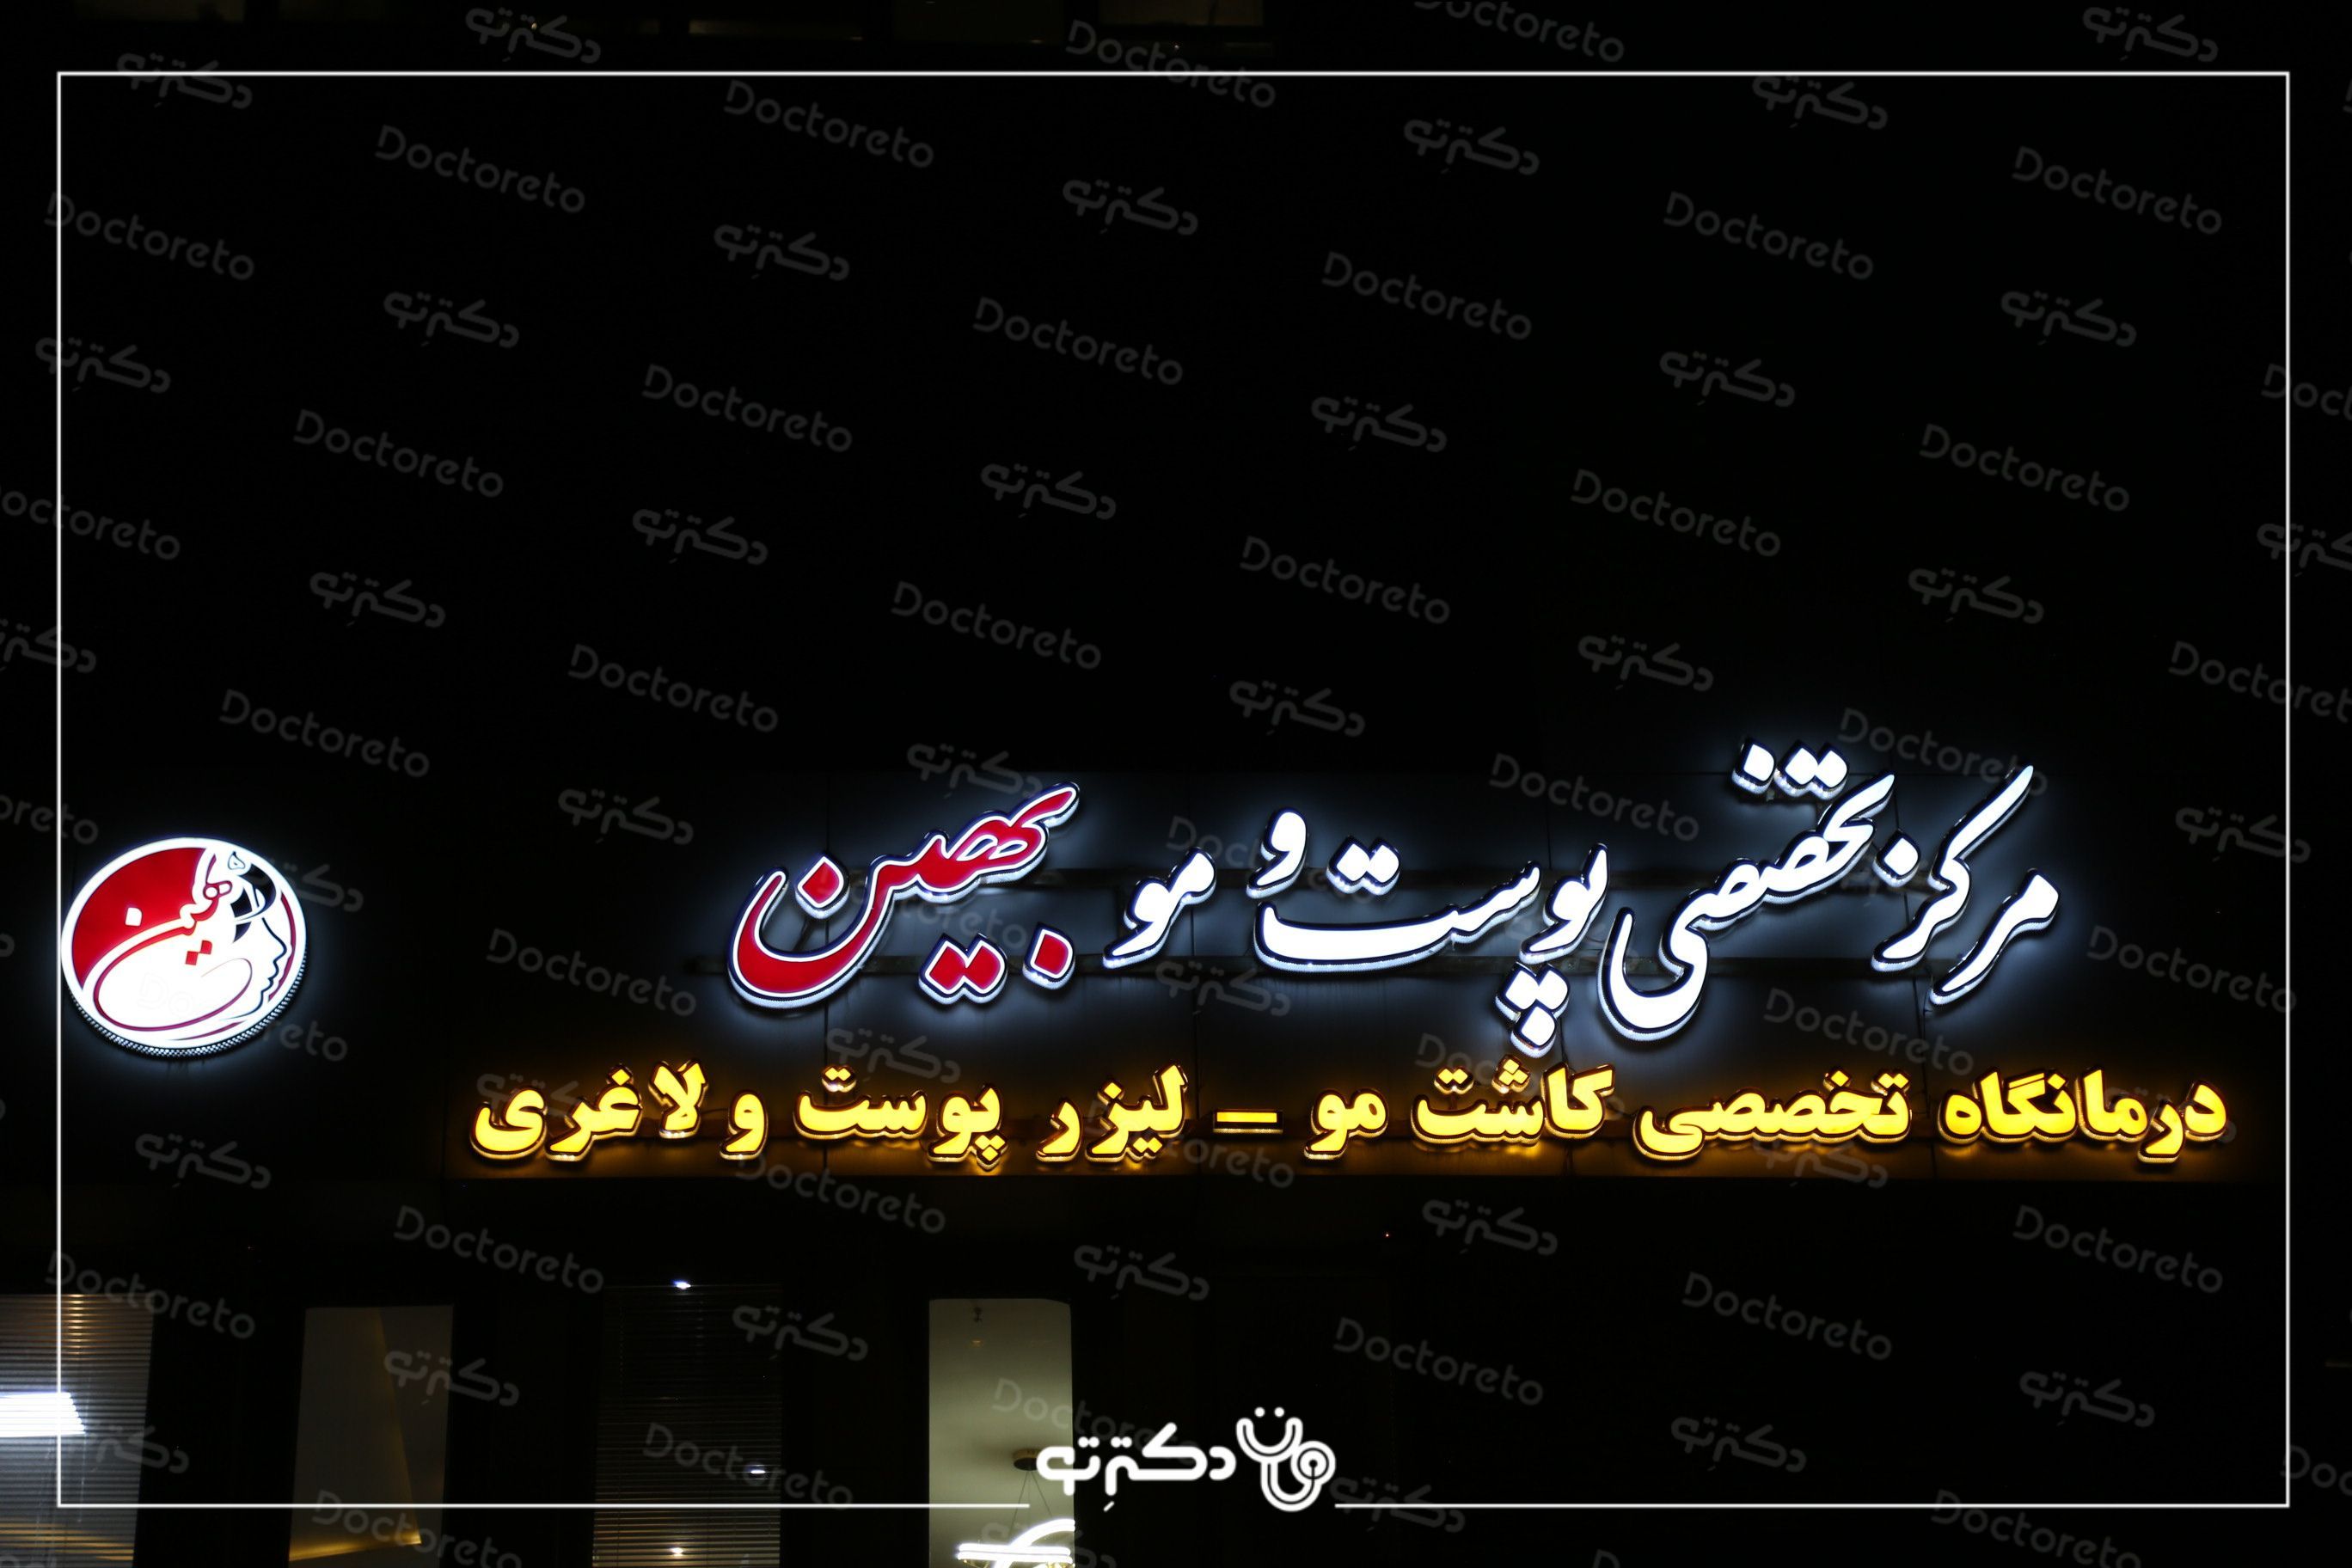 حذف تتو بدن با استفاده از دستگاه لیزر کیوسوییچ (هر5 سانت) دکتر محسن سلیمانی در اصفهان 4